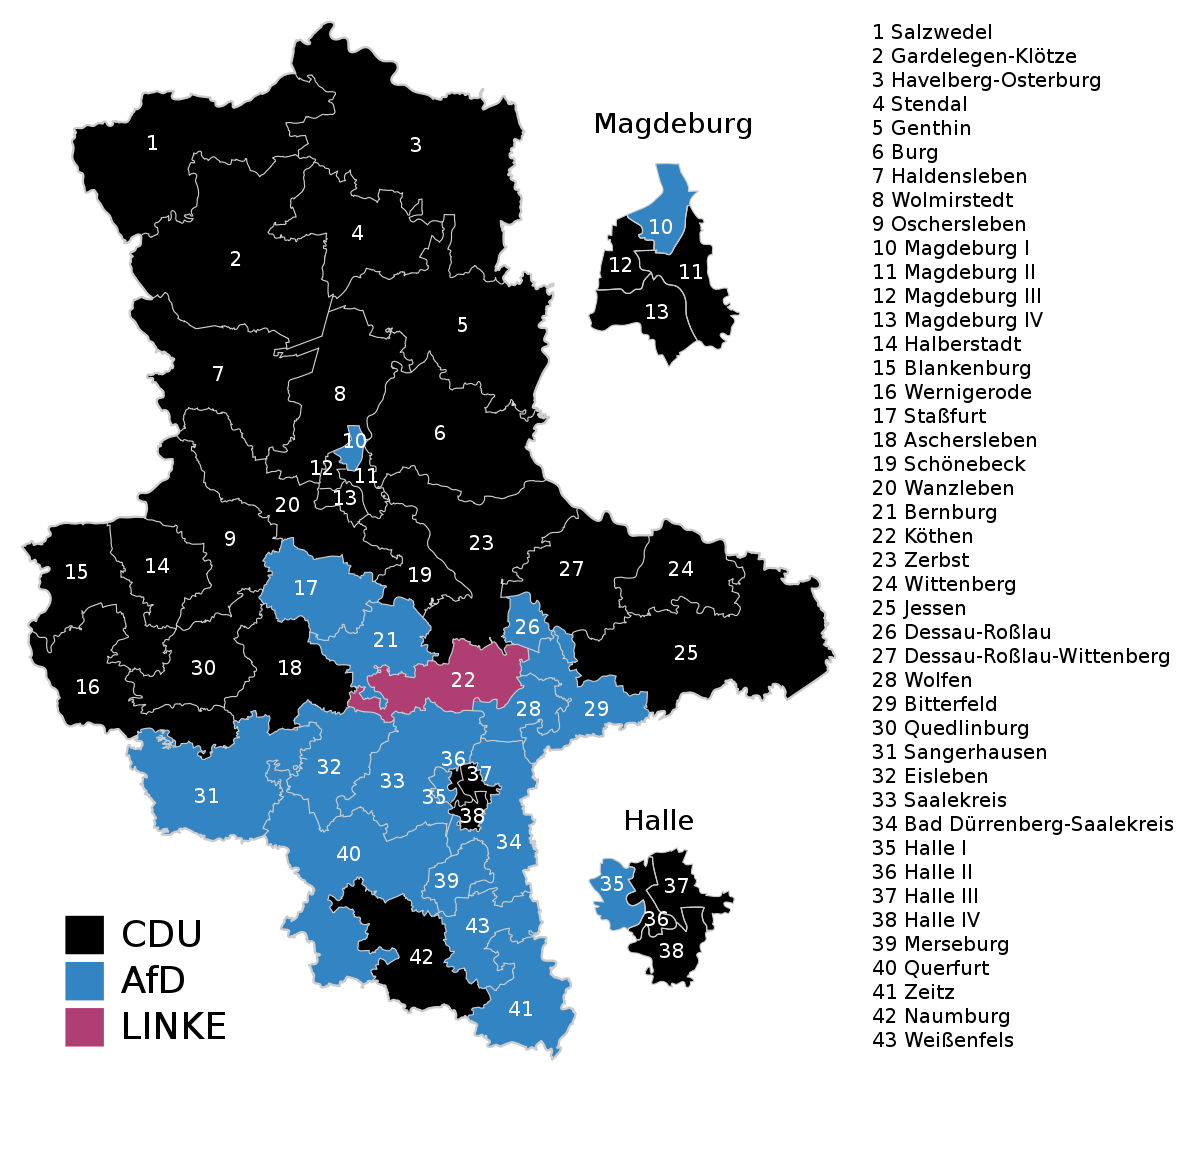 Landtagswahl in Sachsen-Anhalt 2016 - Wikipedia